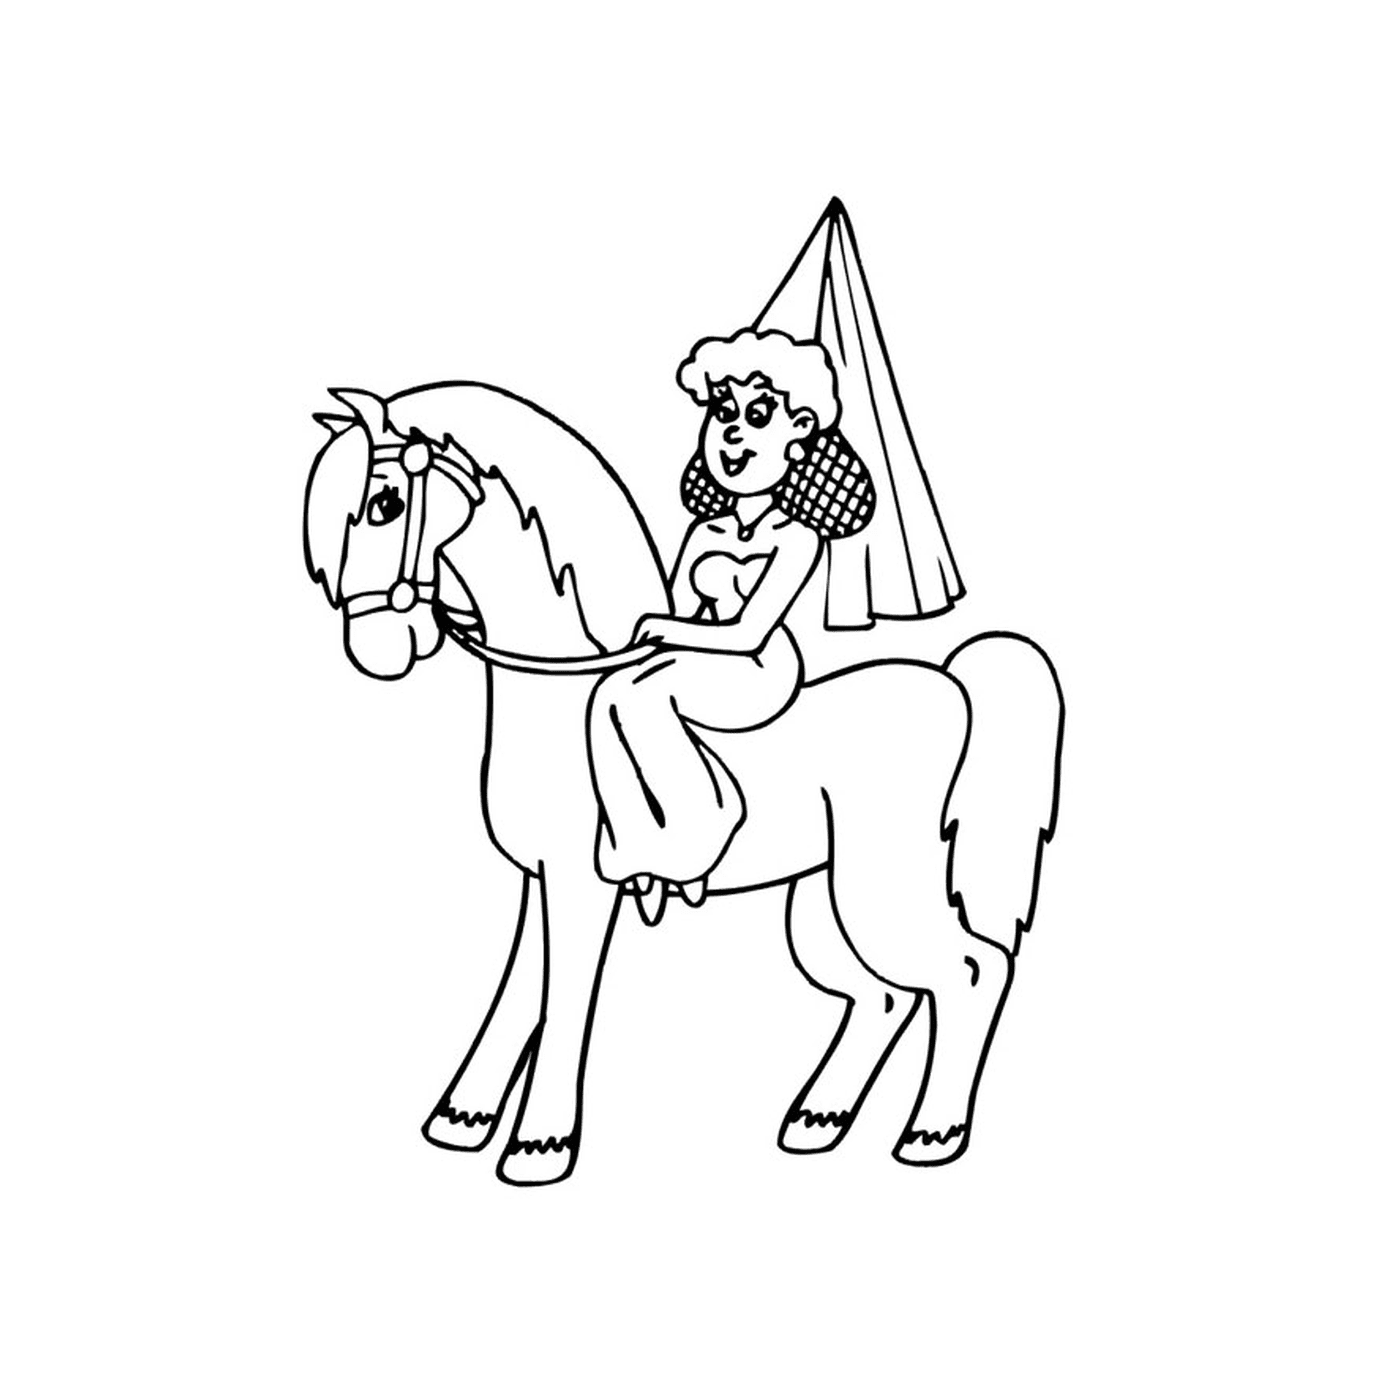  Persona seduta su un cavallo principessa 